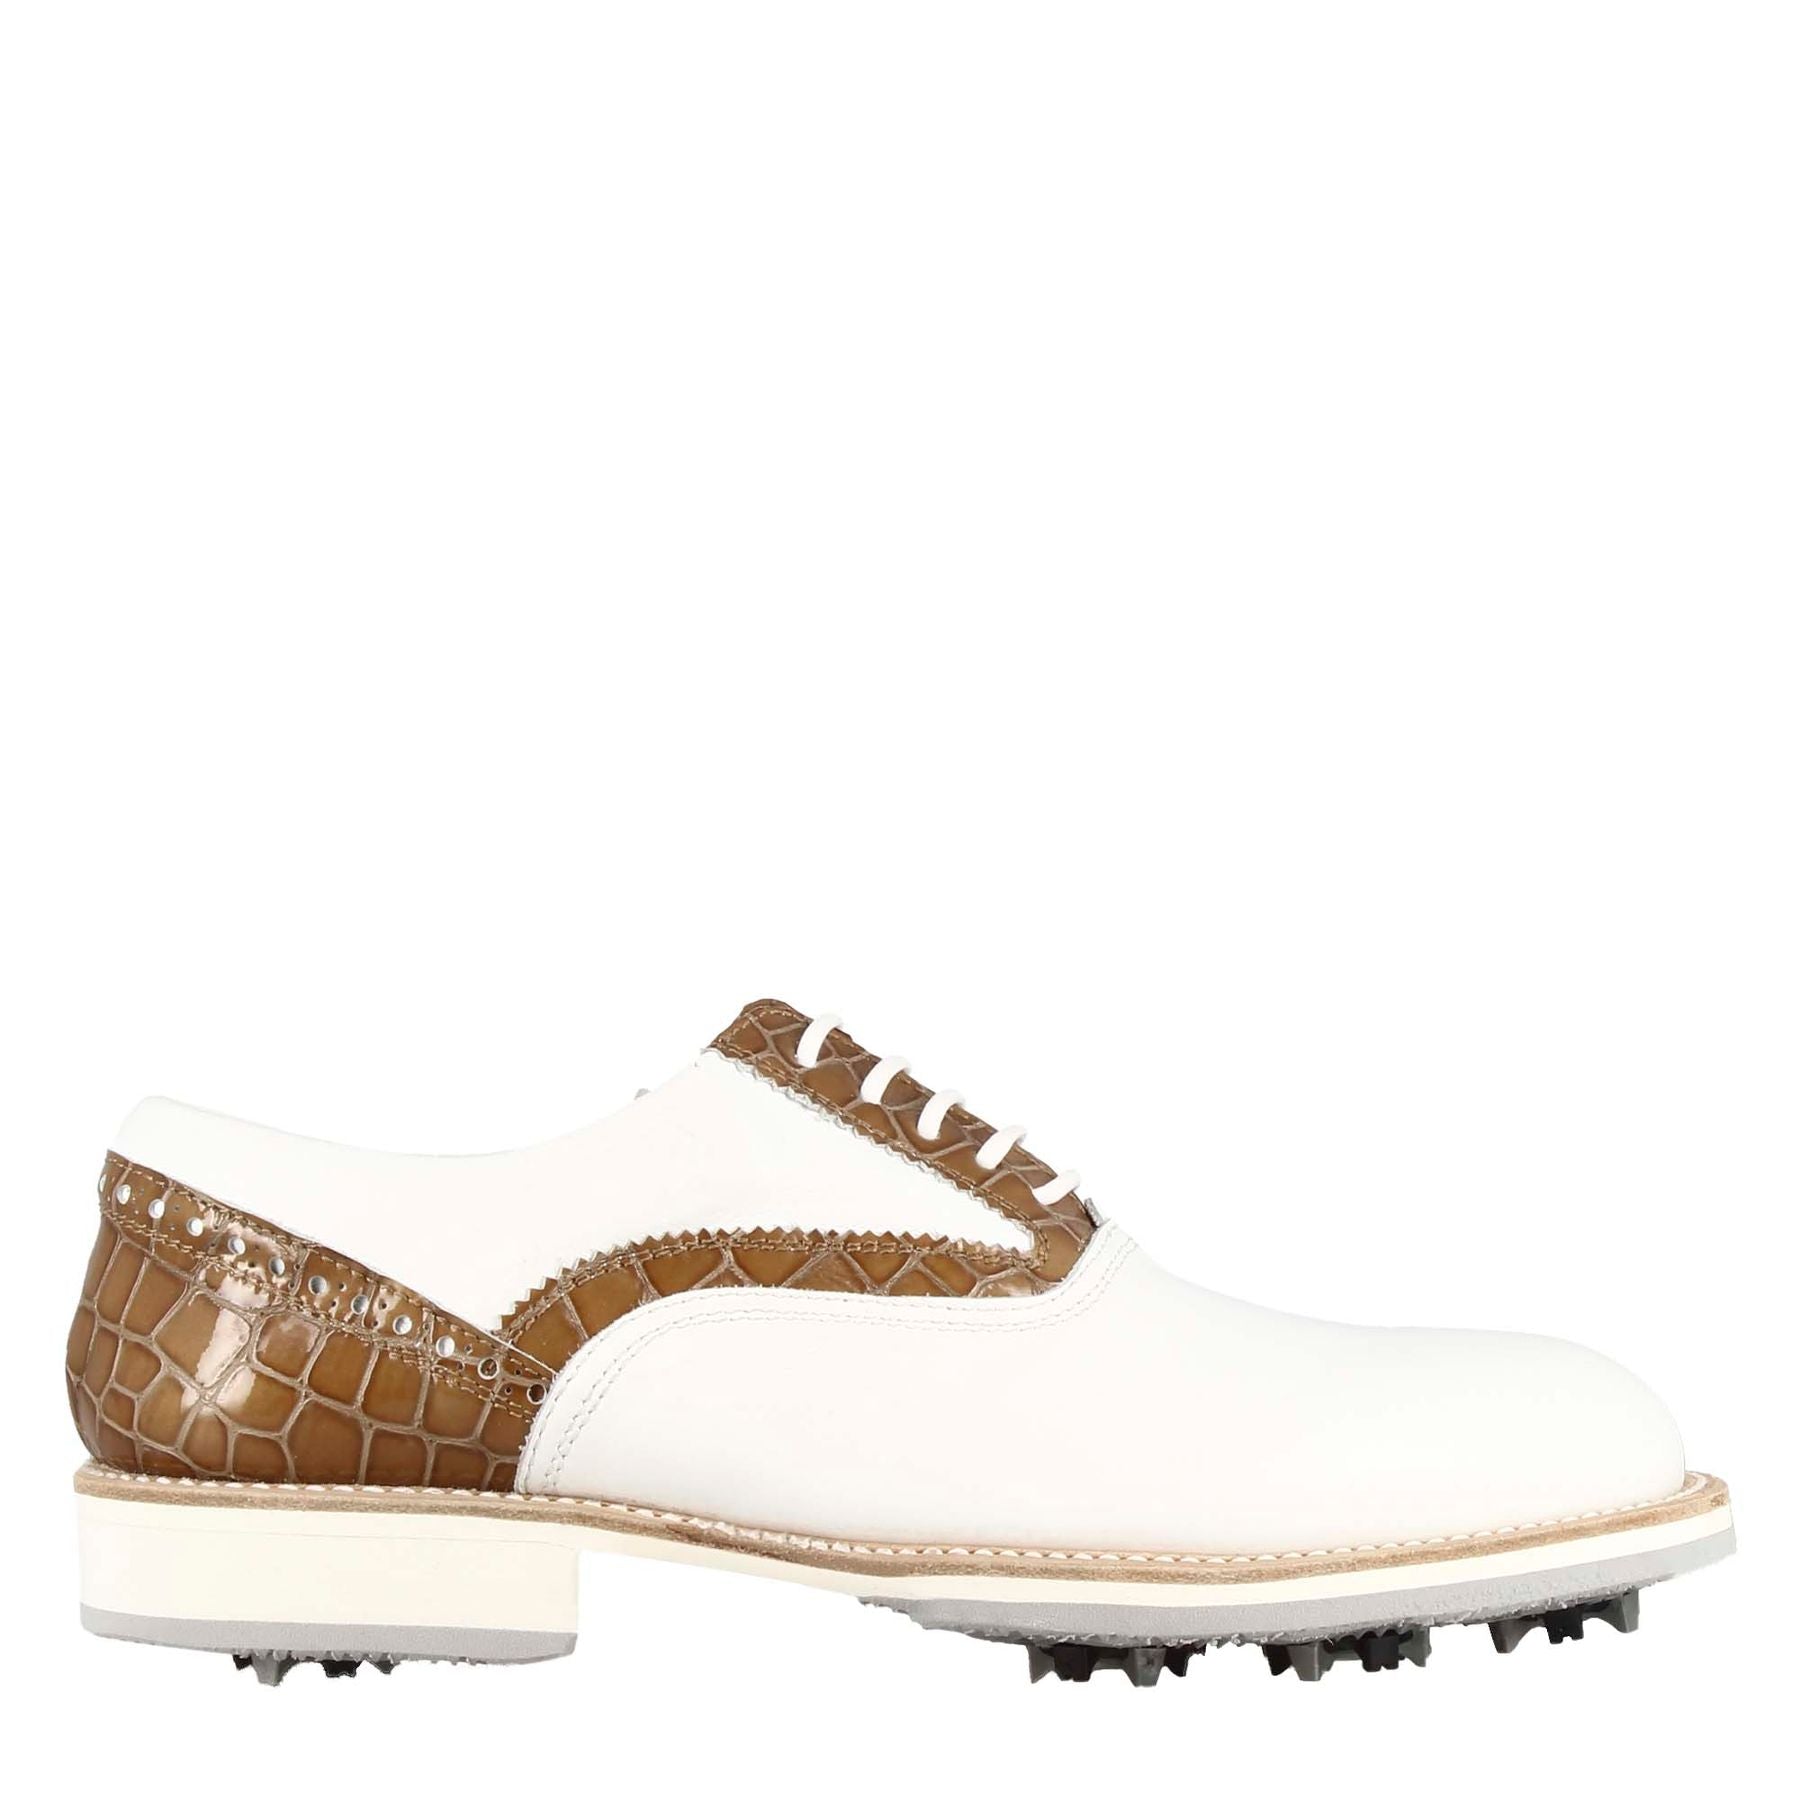 Handgefertigte Damen-Golfschuhe aus weißem Leder mit hellbraunen Details